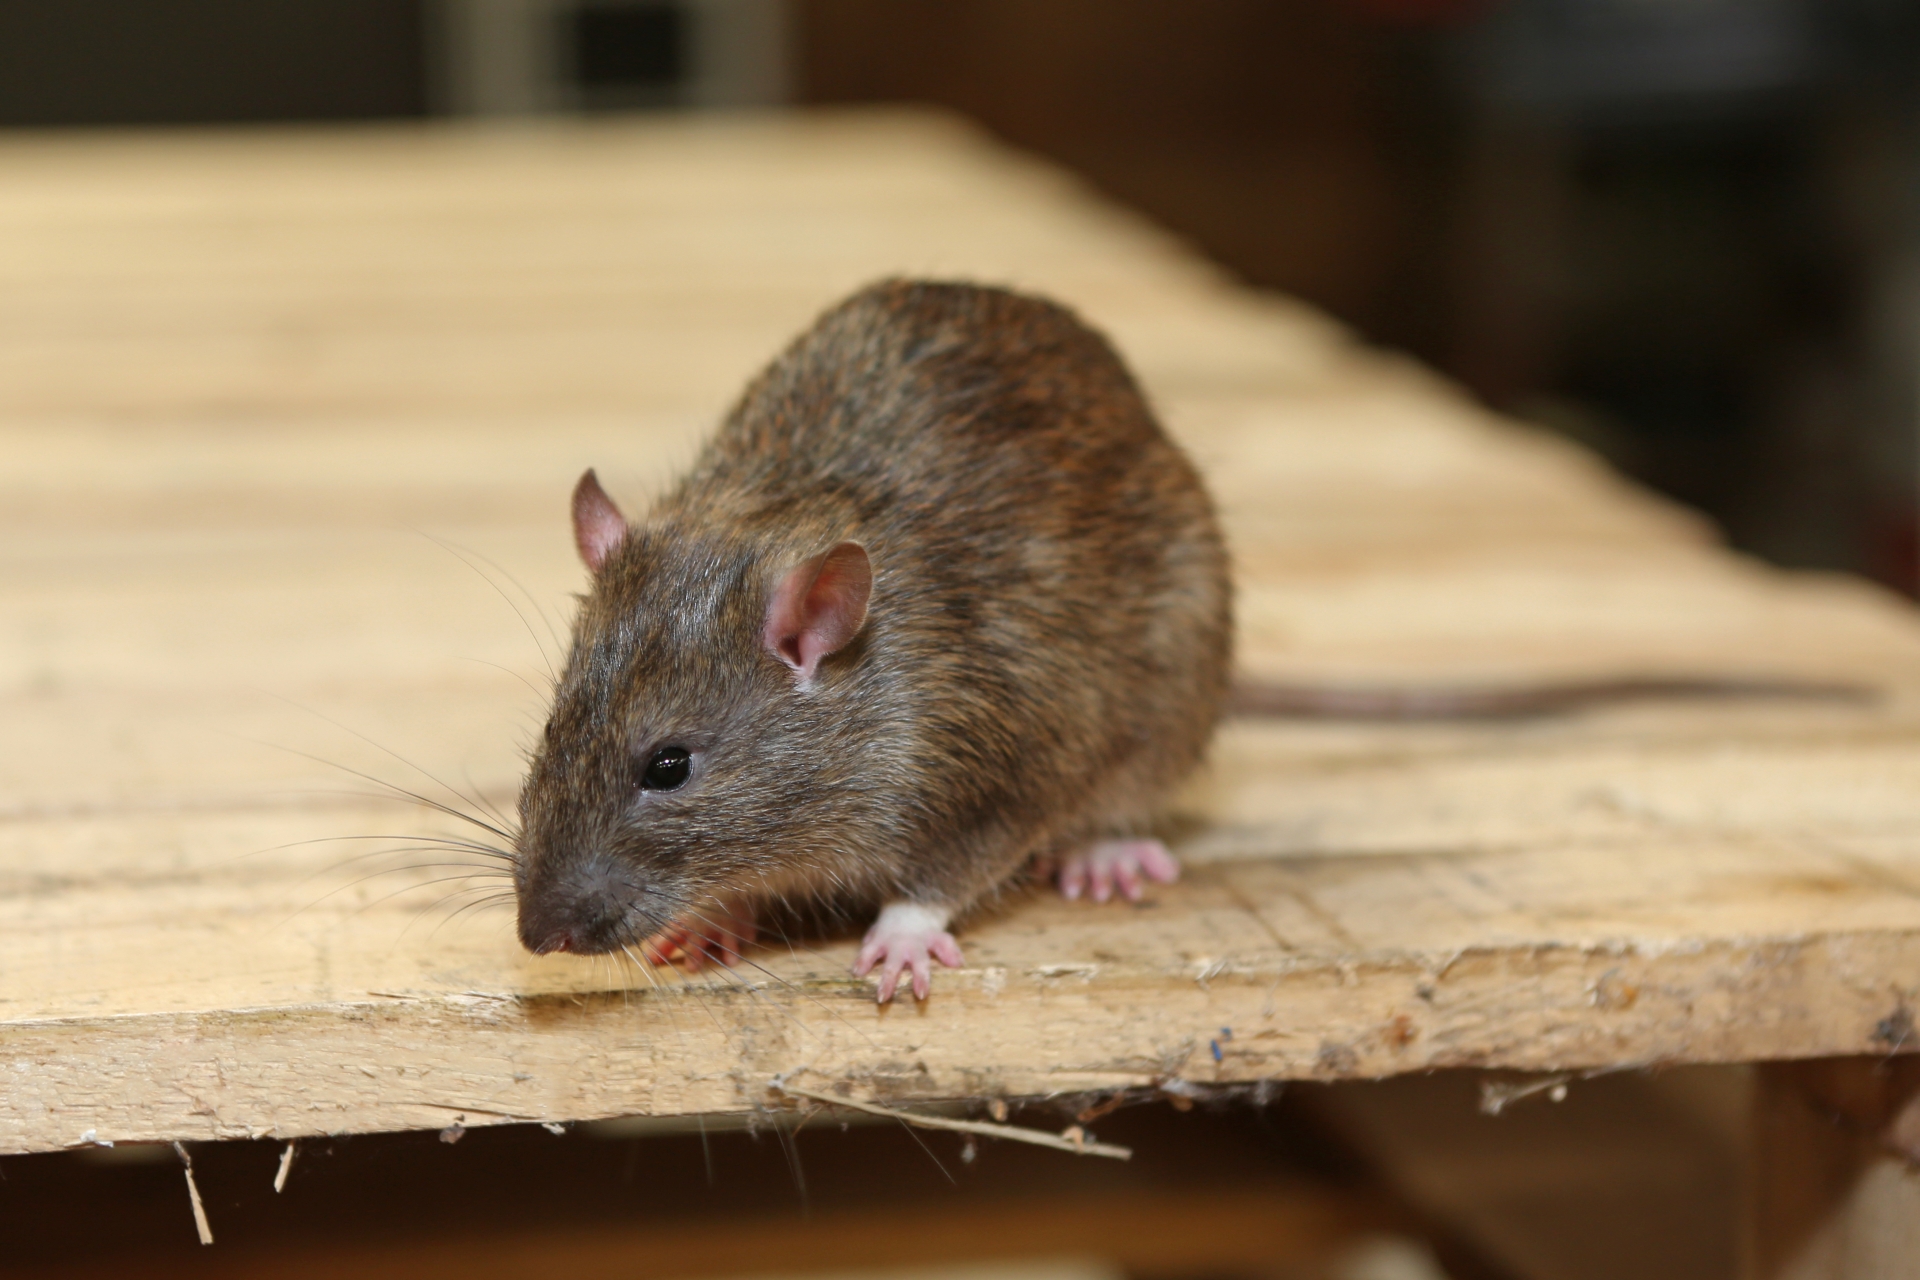 Rat extermination, Pest Control in Lewisham, SE13. Call Now 020 8166 9746